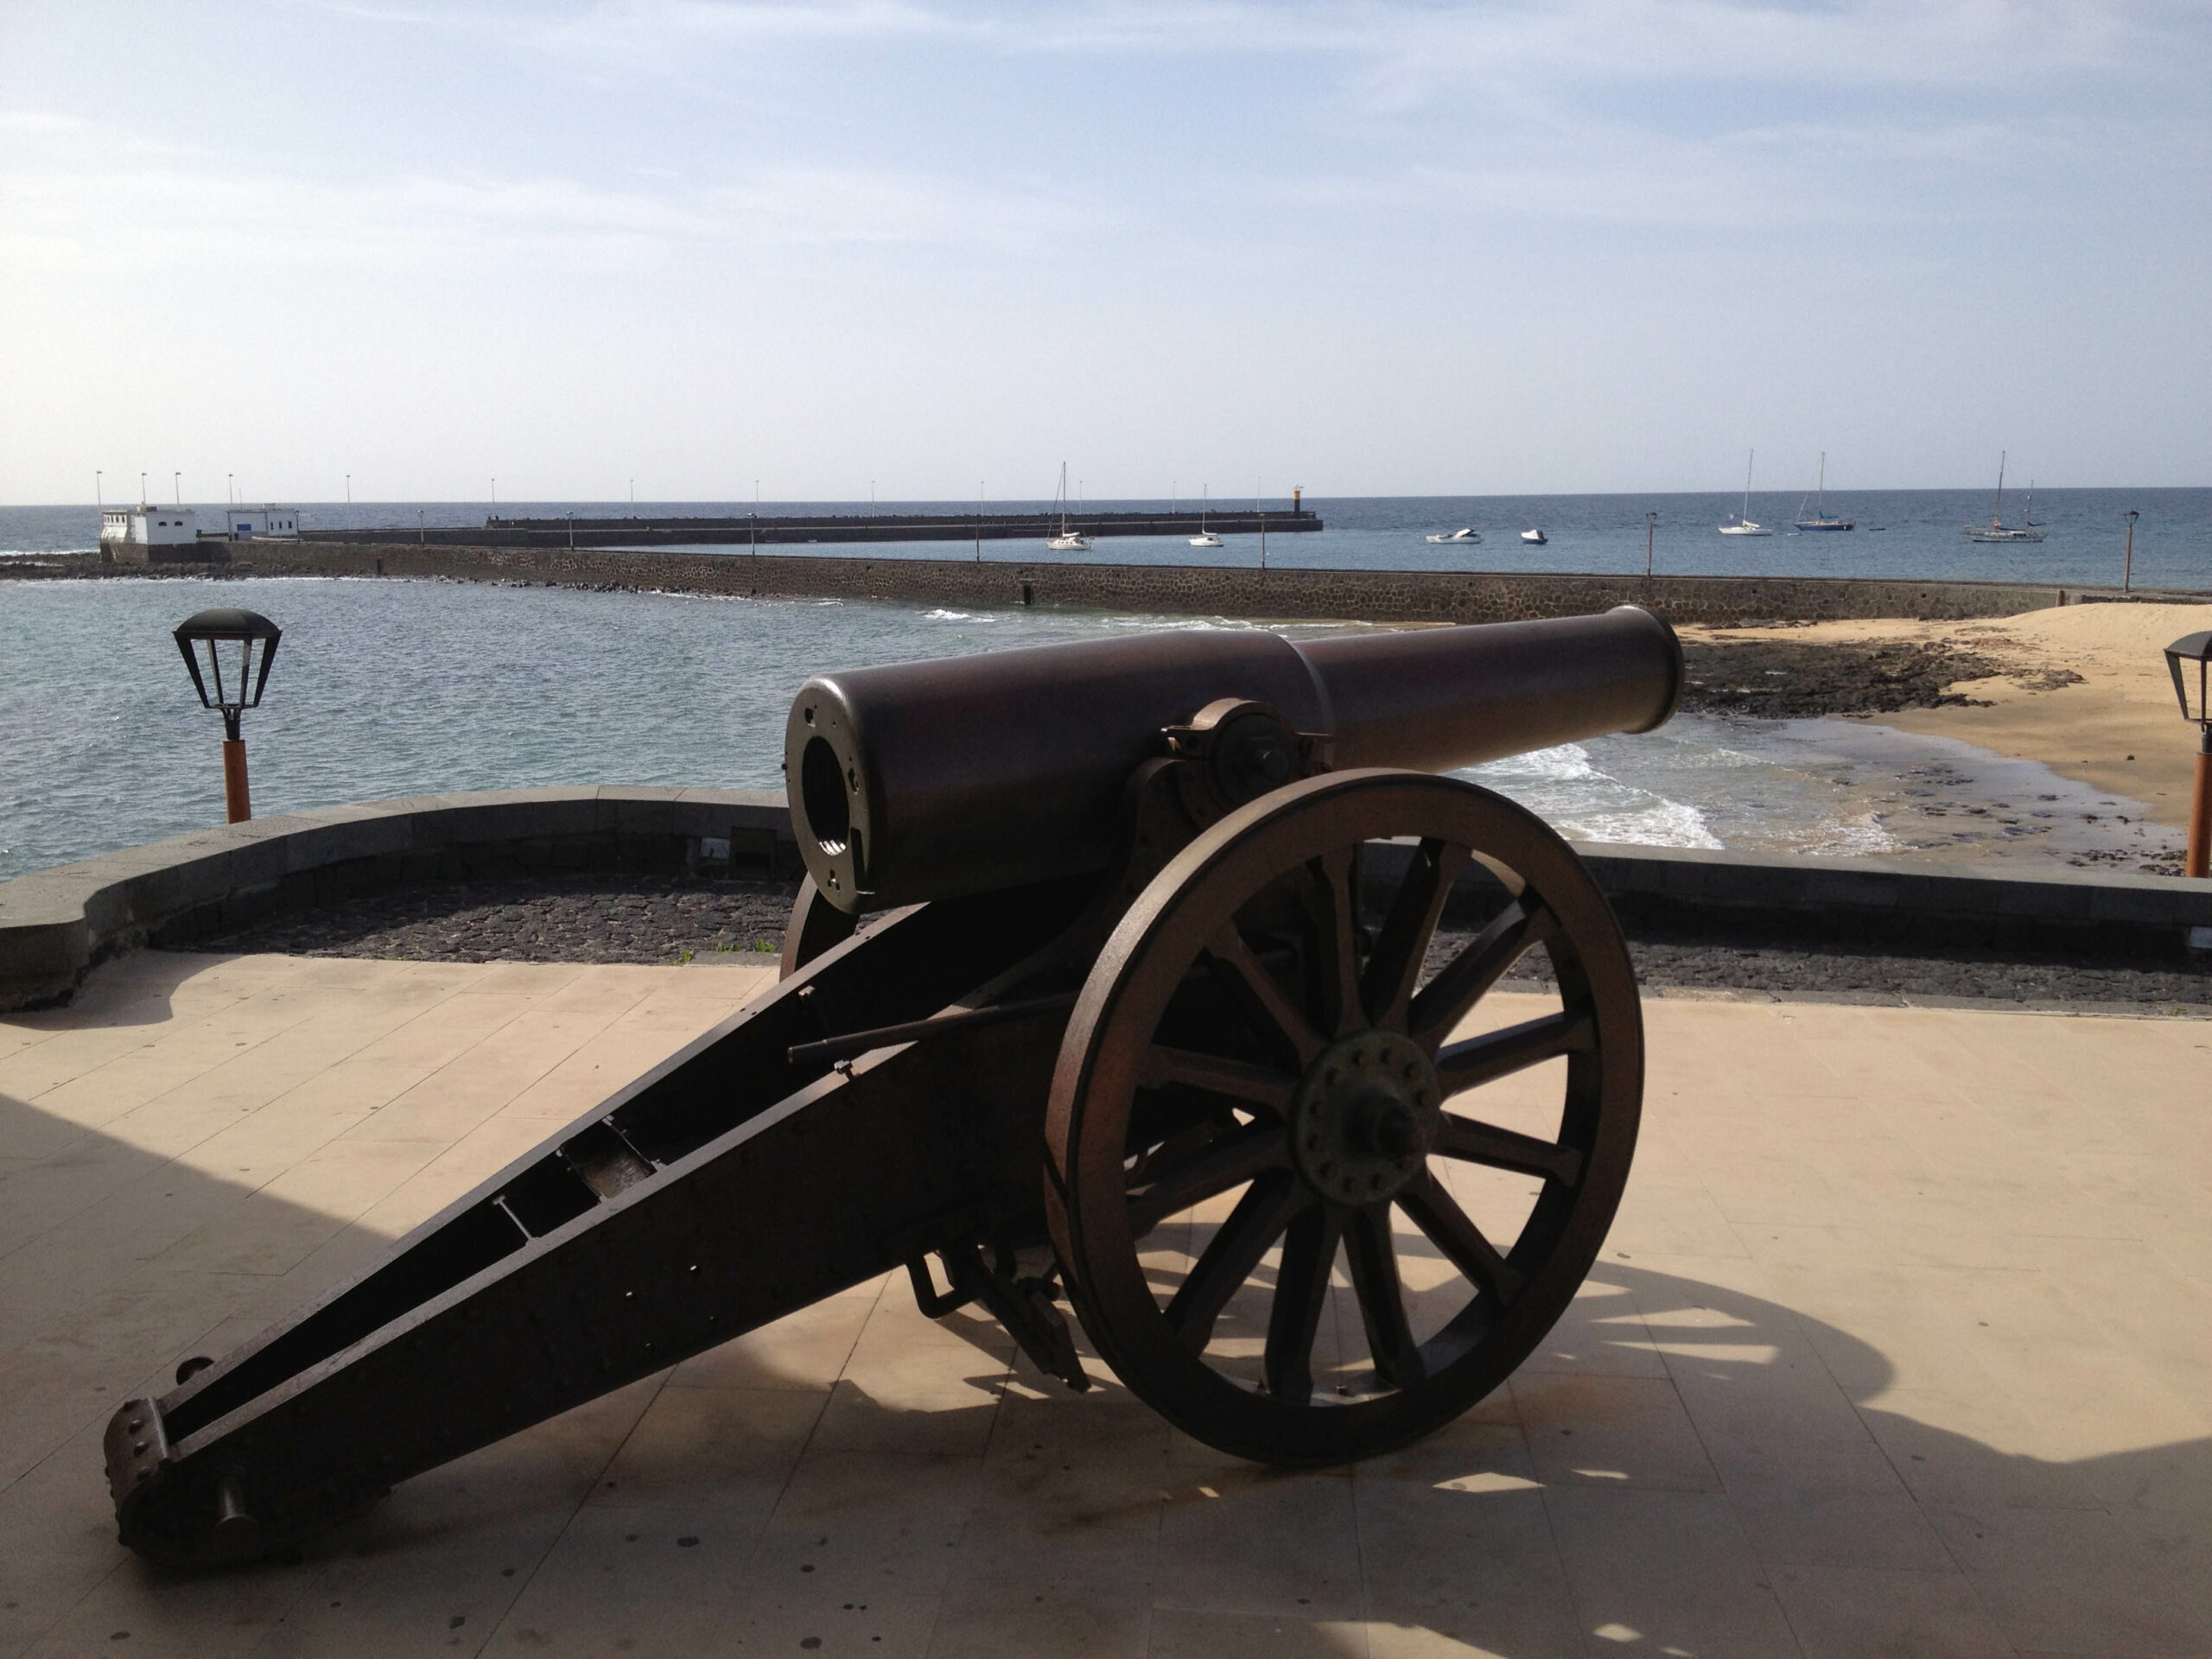 Cannon at Castillo de San Gabriel in Arrecife, Lanzarote